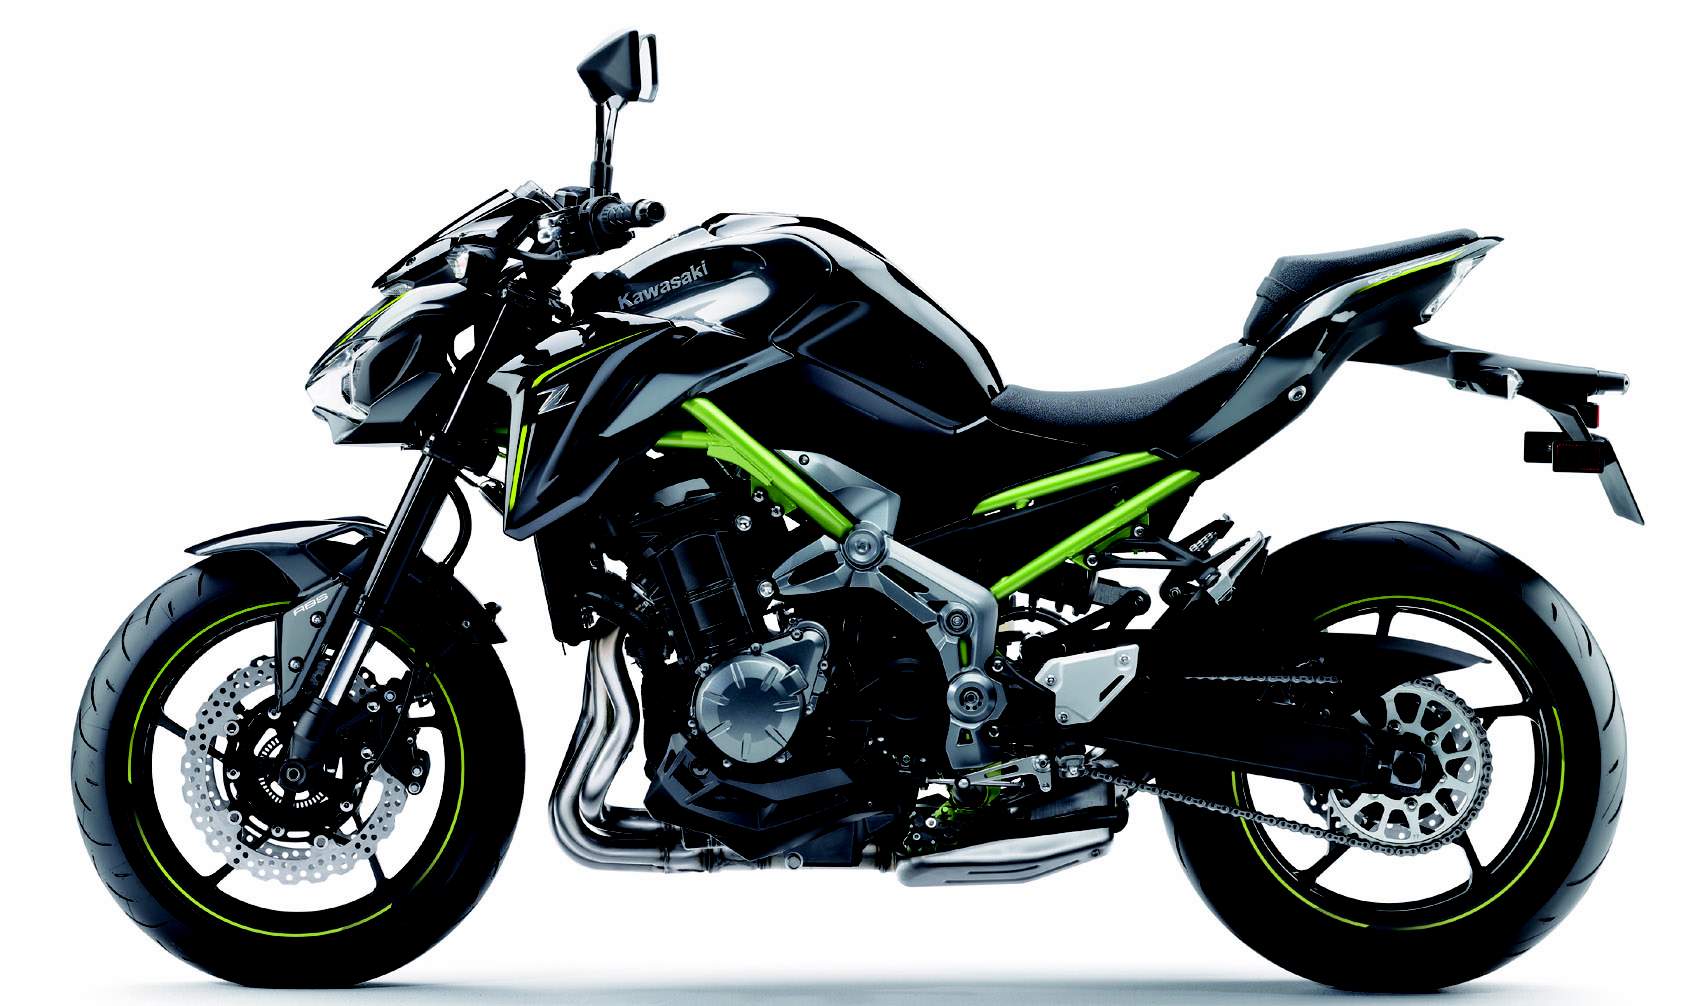 Kawasaki Z900 motorcycle accessories at Moto Machines